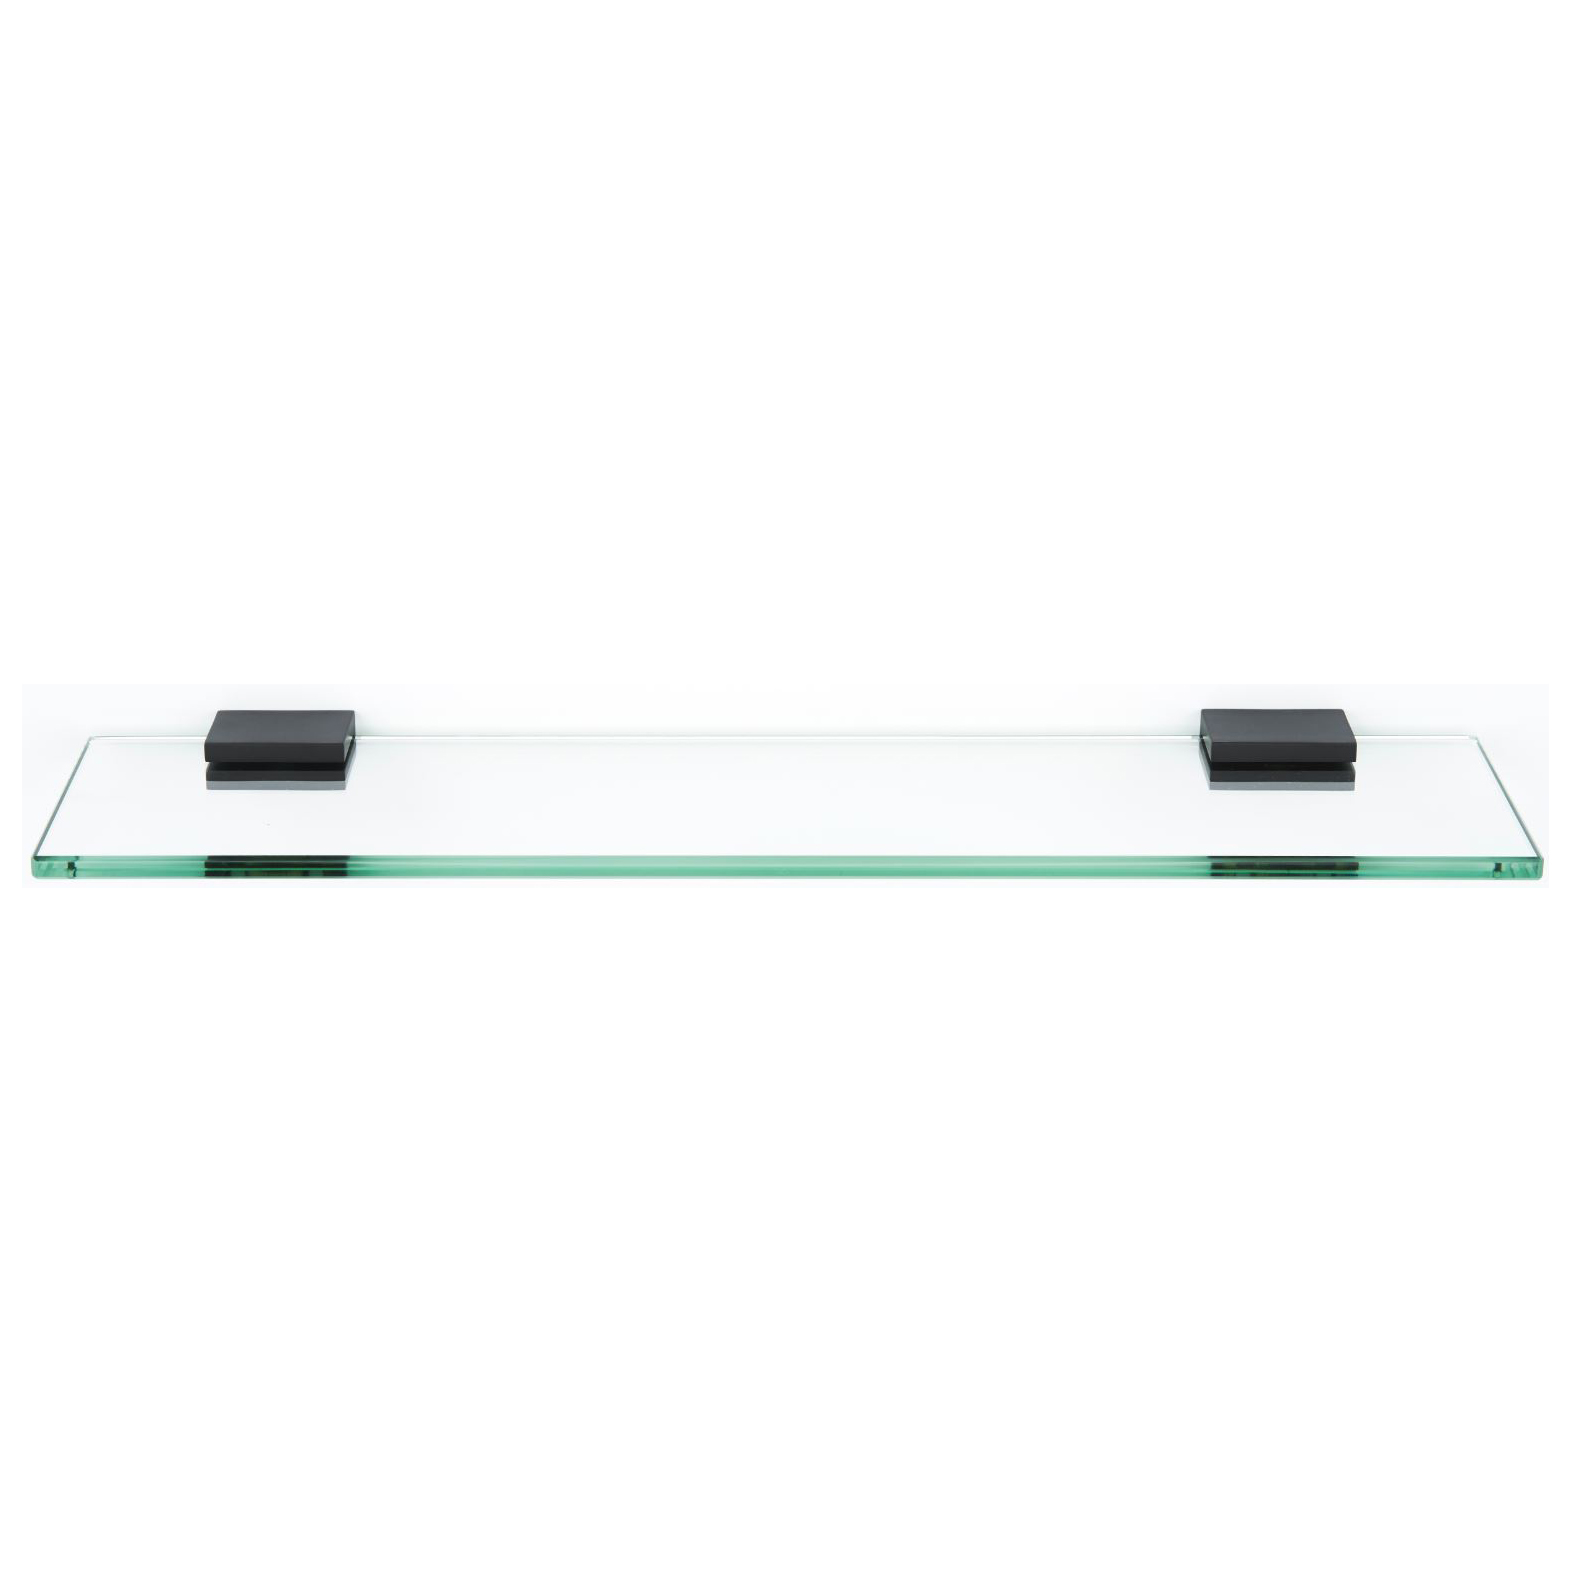 Contemporary II 18" Glass Shelf w/Brackets in Matte Black